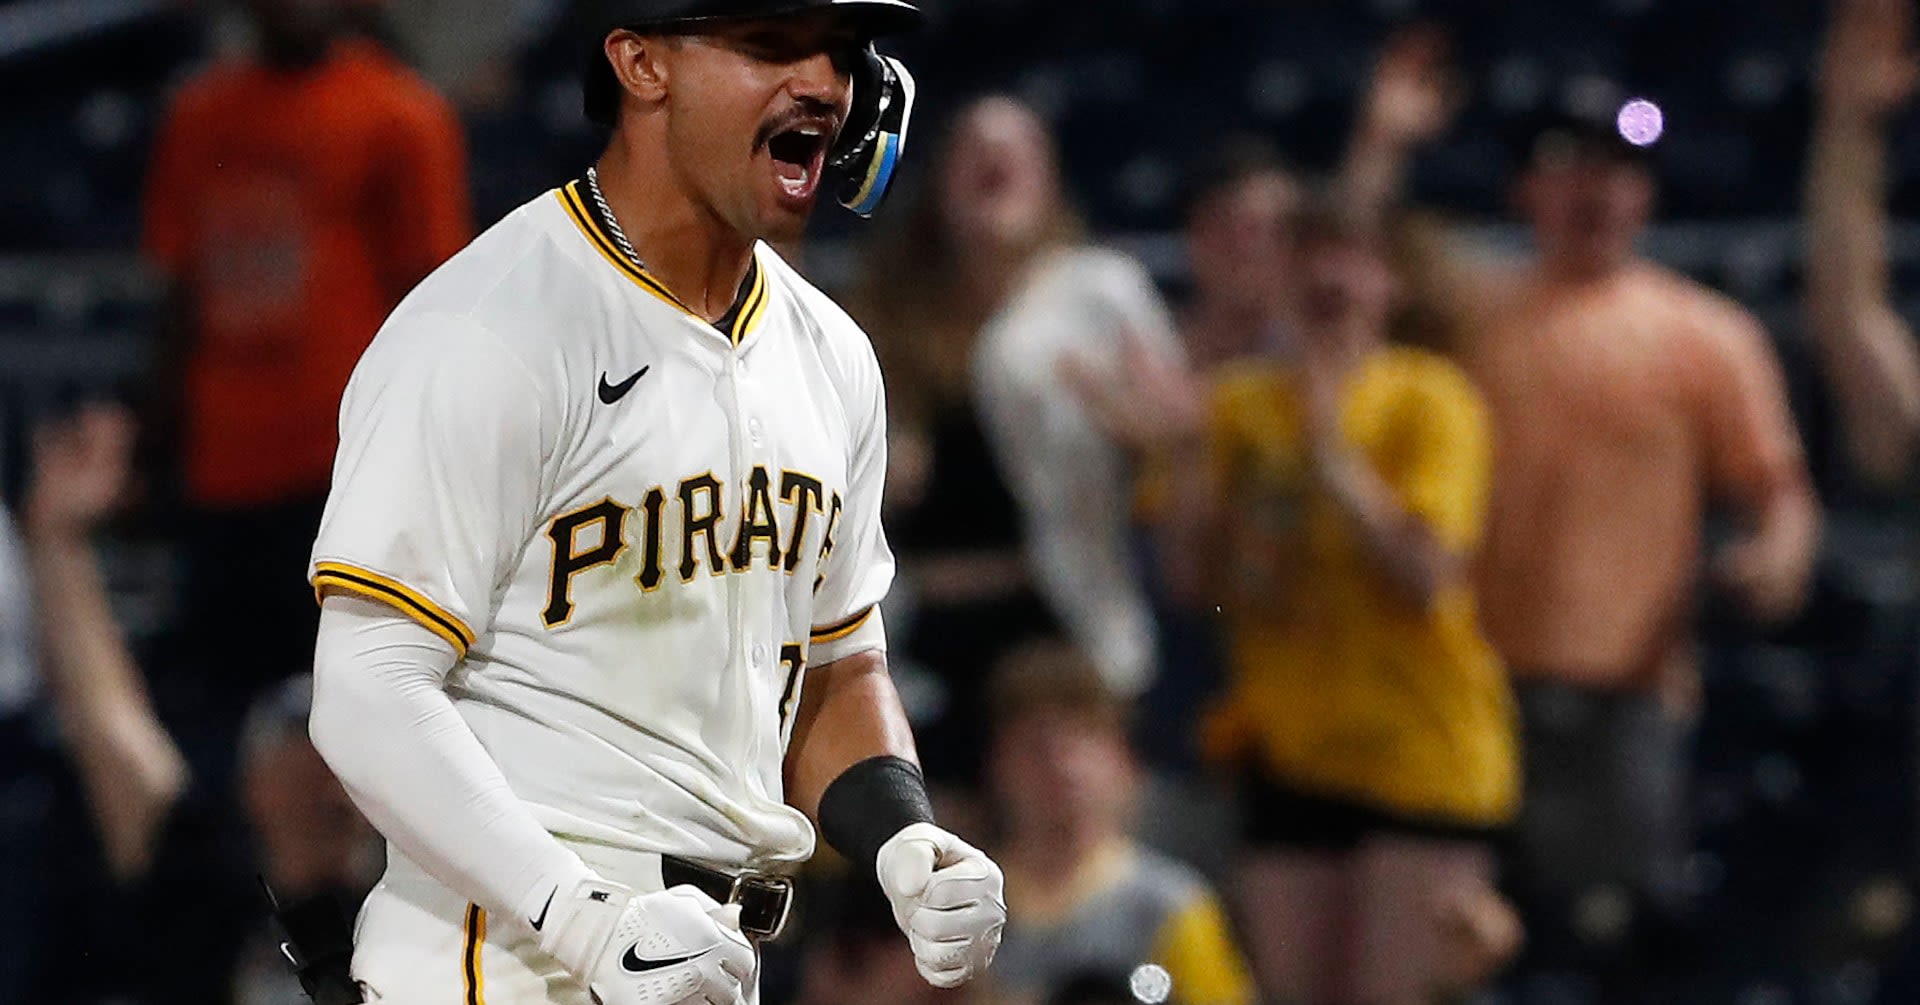 MLB roundup: Pirates stun Giants with late outburst